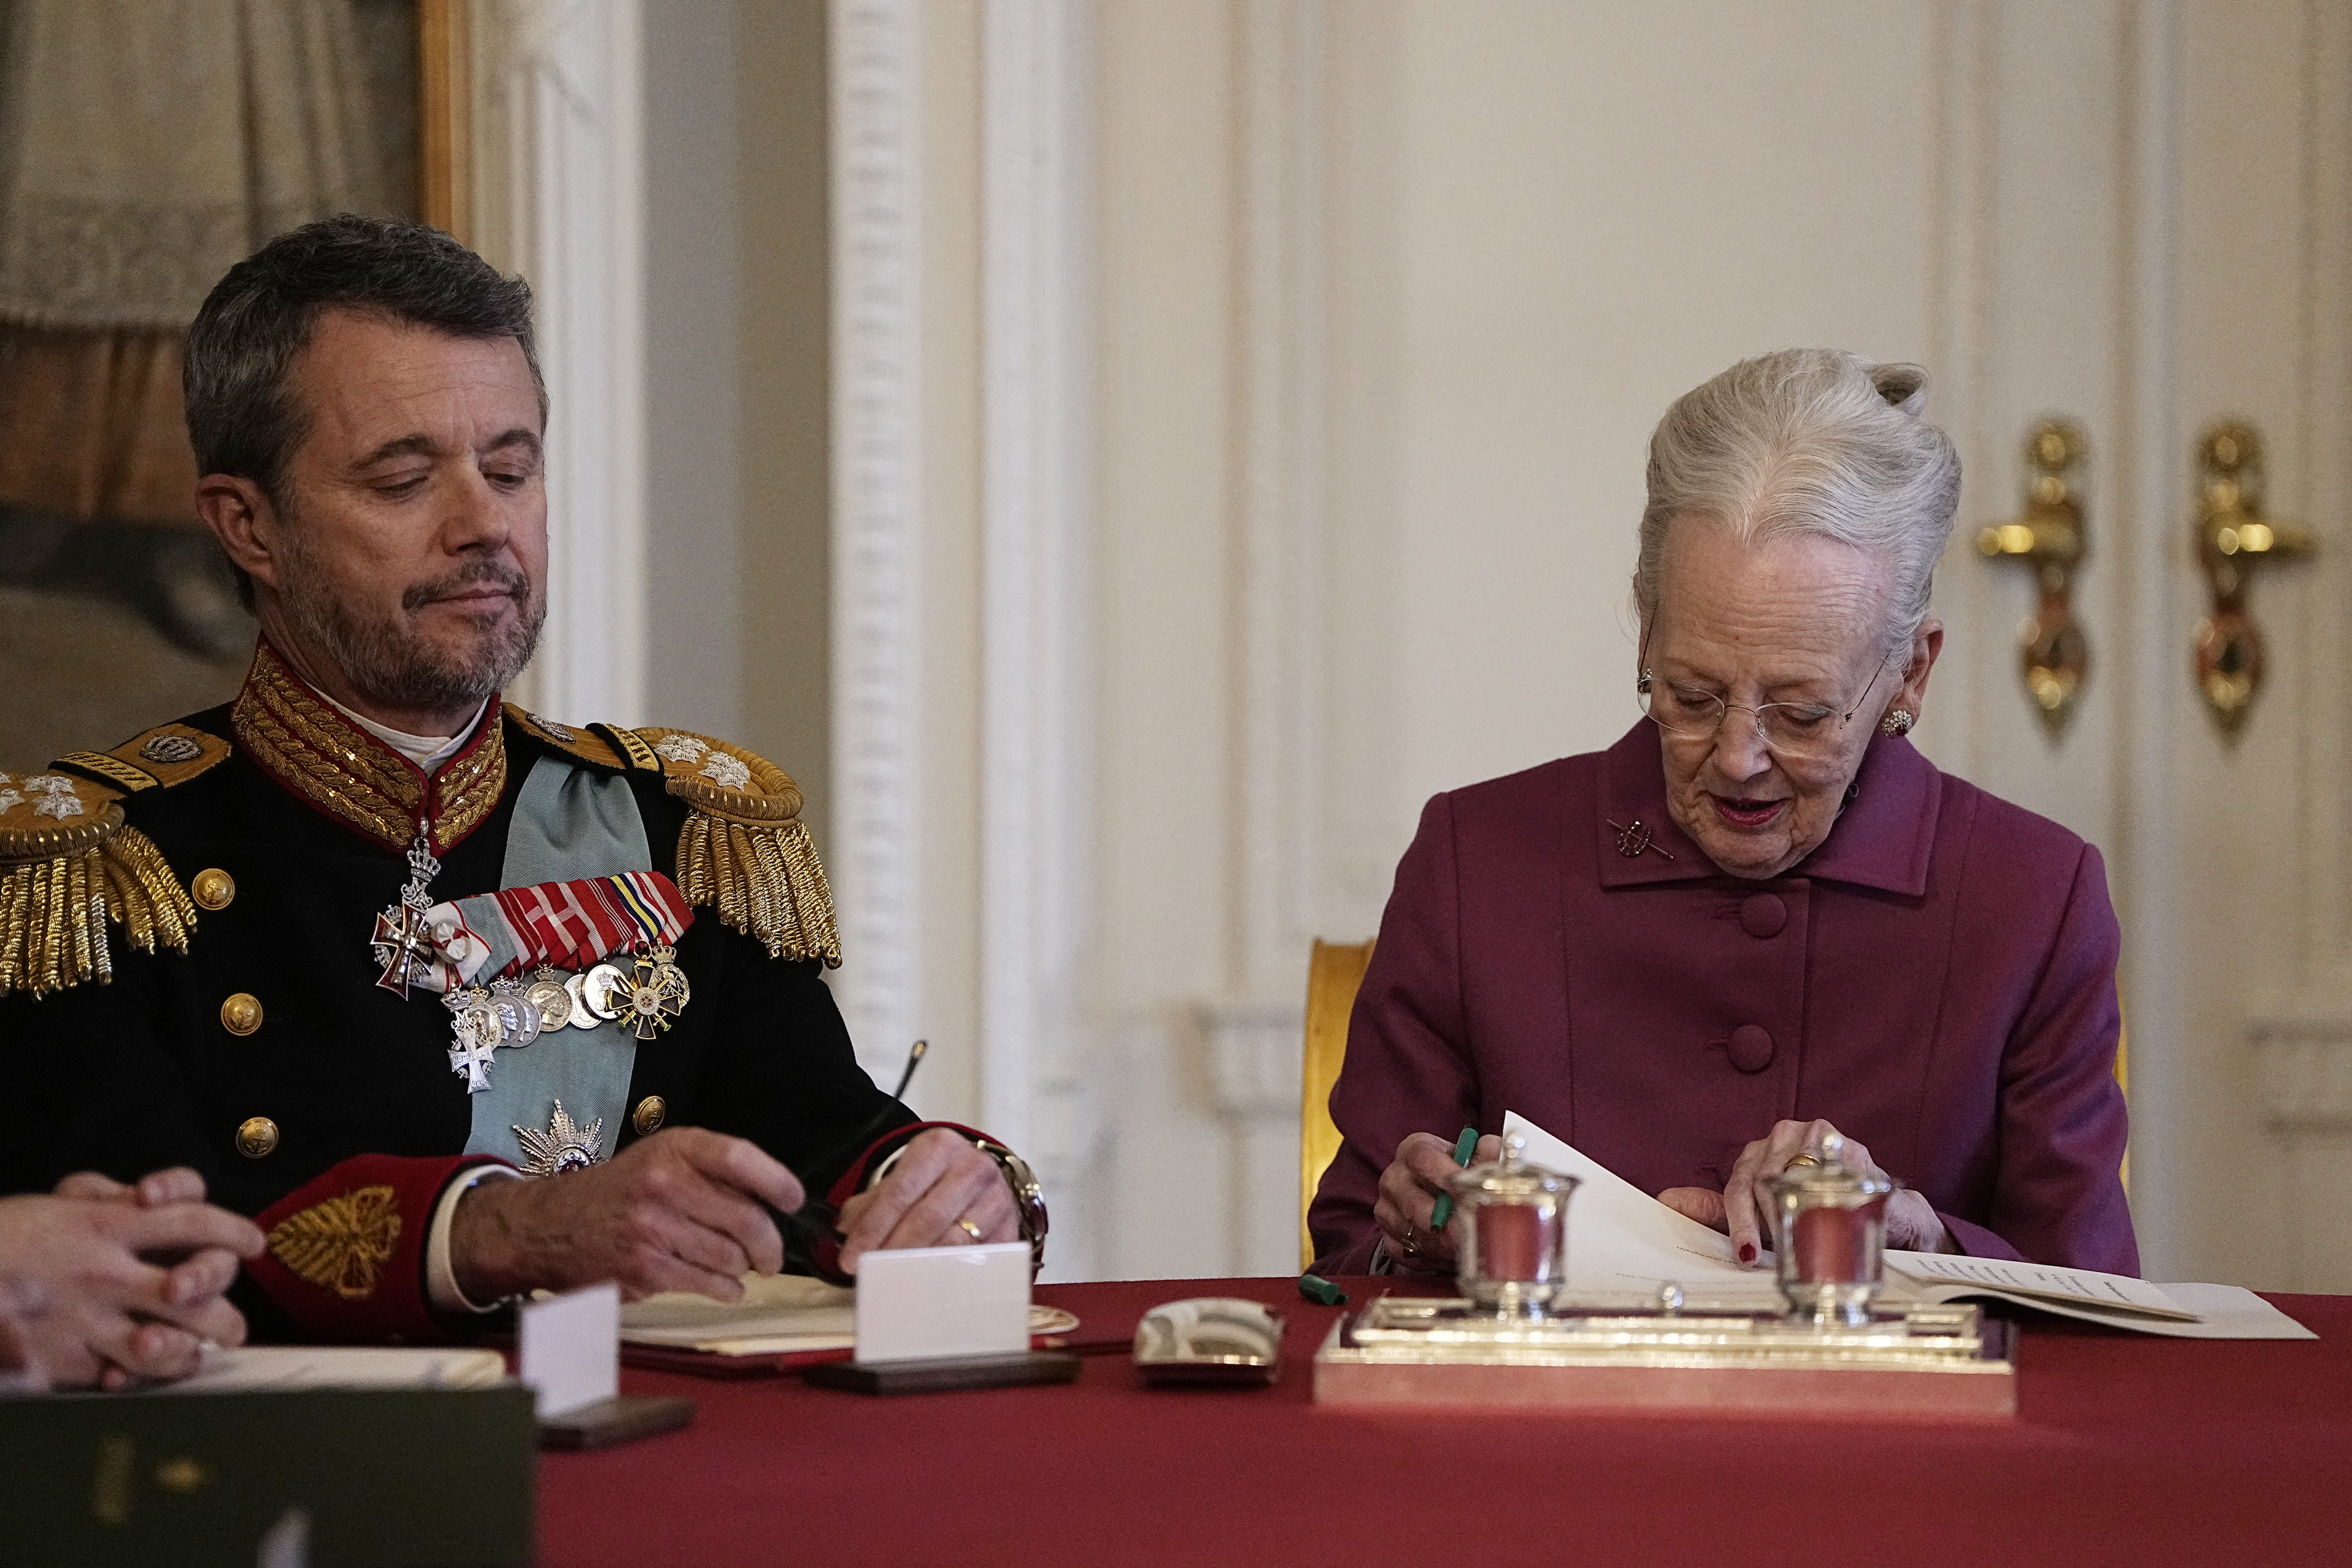 Le moment où la reine Margrethe II a abdiqué le trône en faveur de son fils